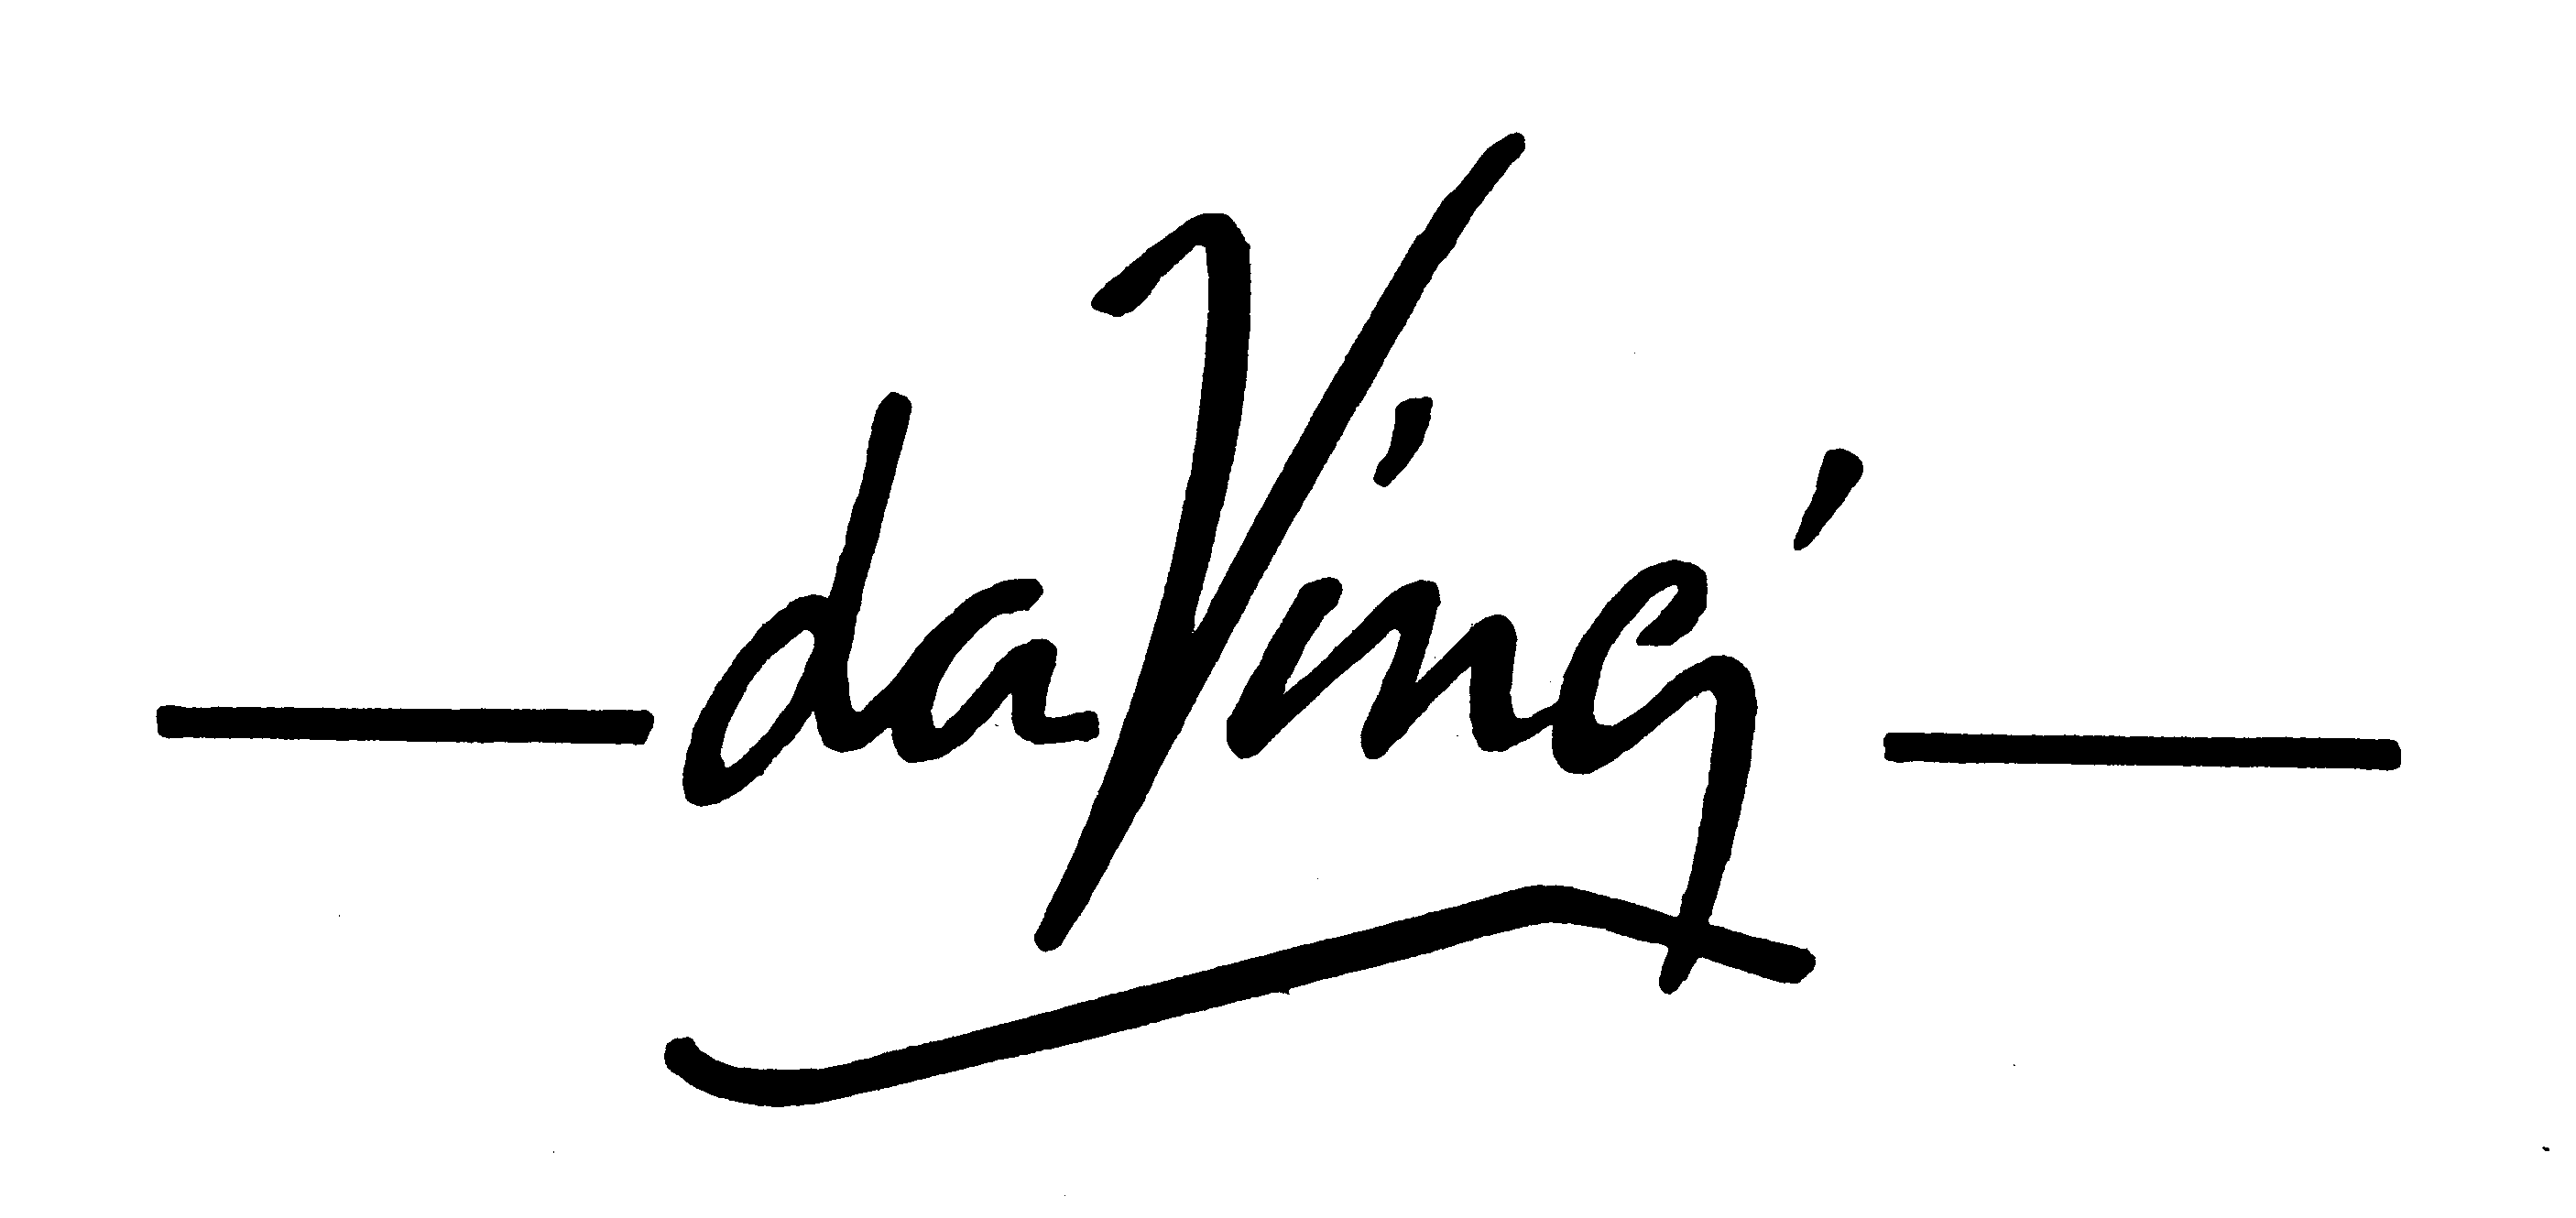 Trademark Logo DA VINCI